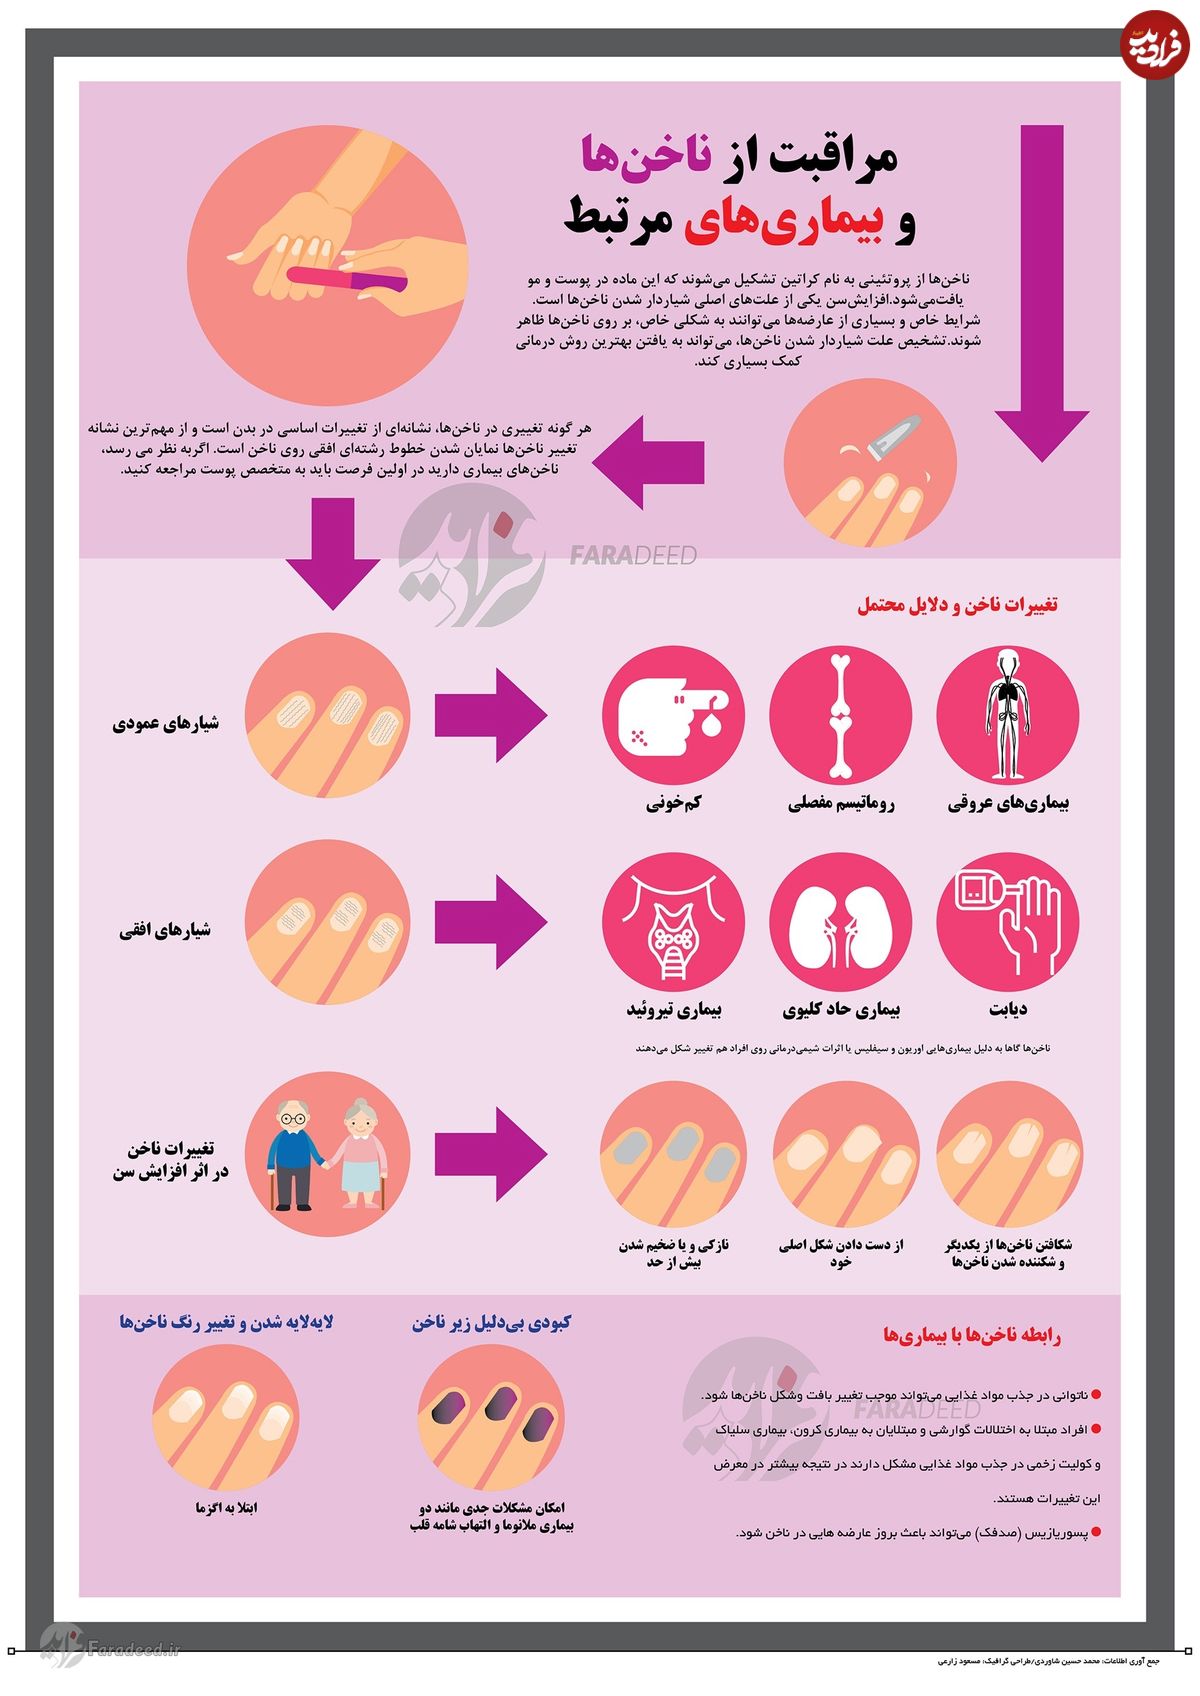 اینفوگرافی/ تشخیص بیماری از روی ناخن